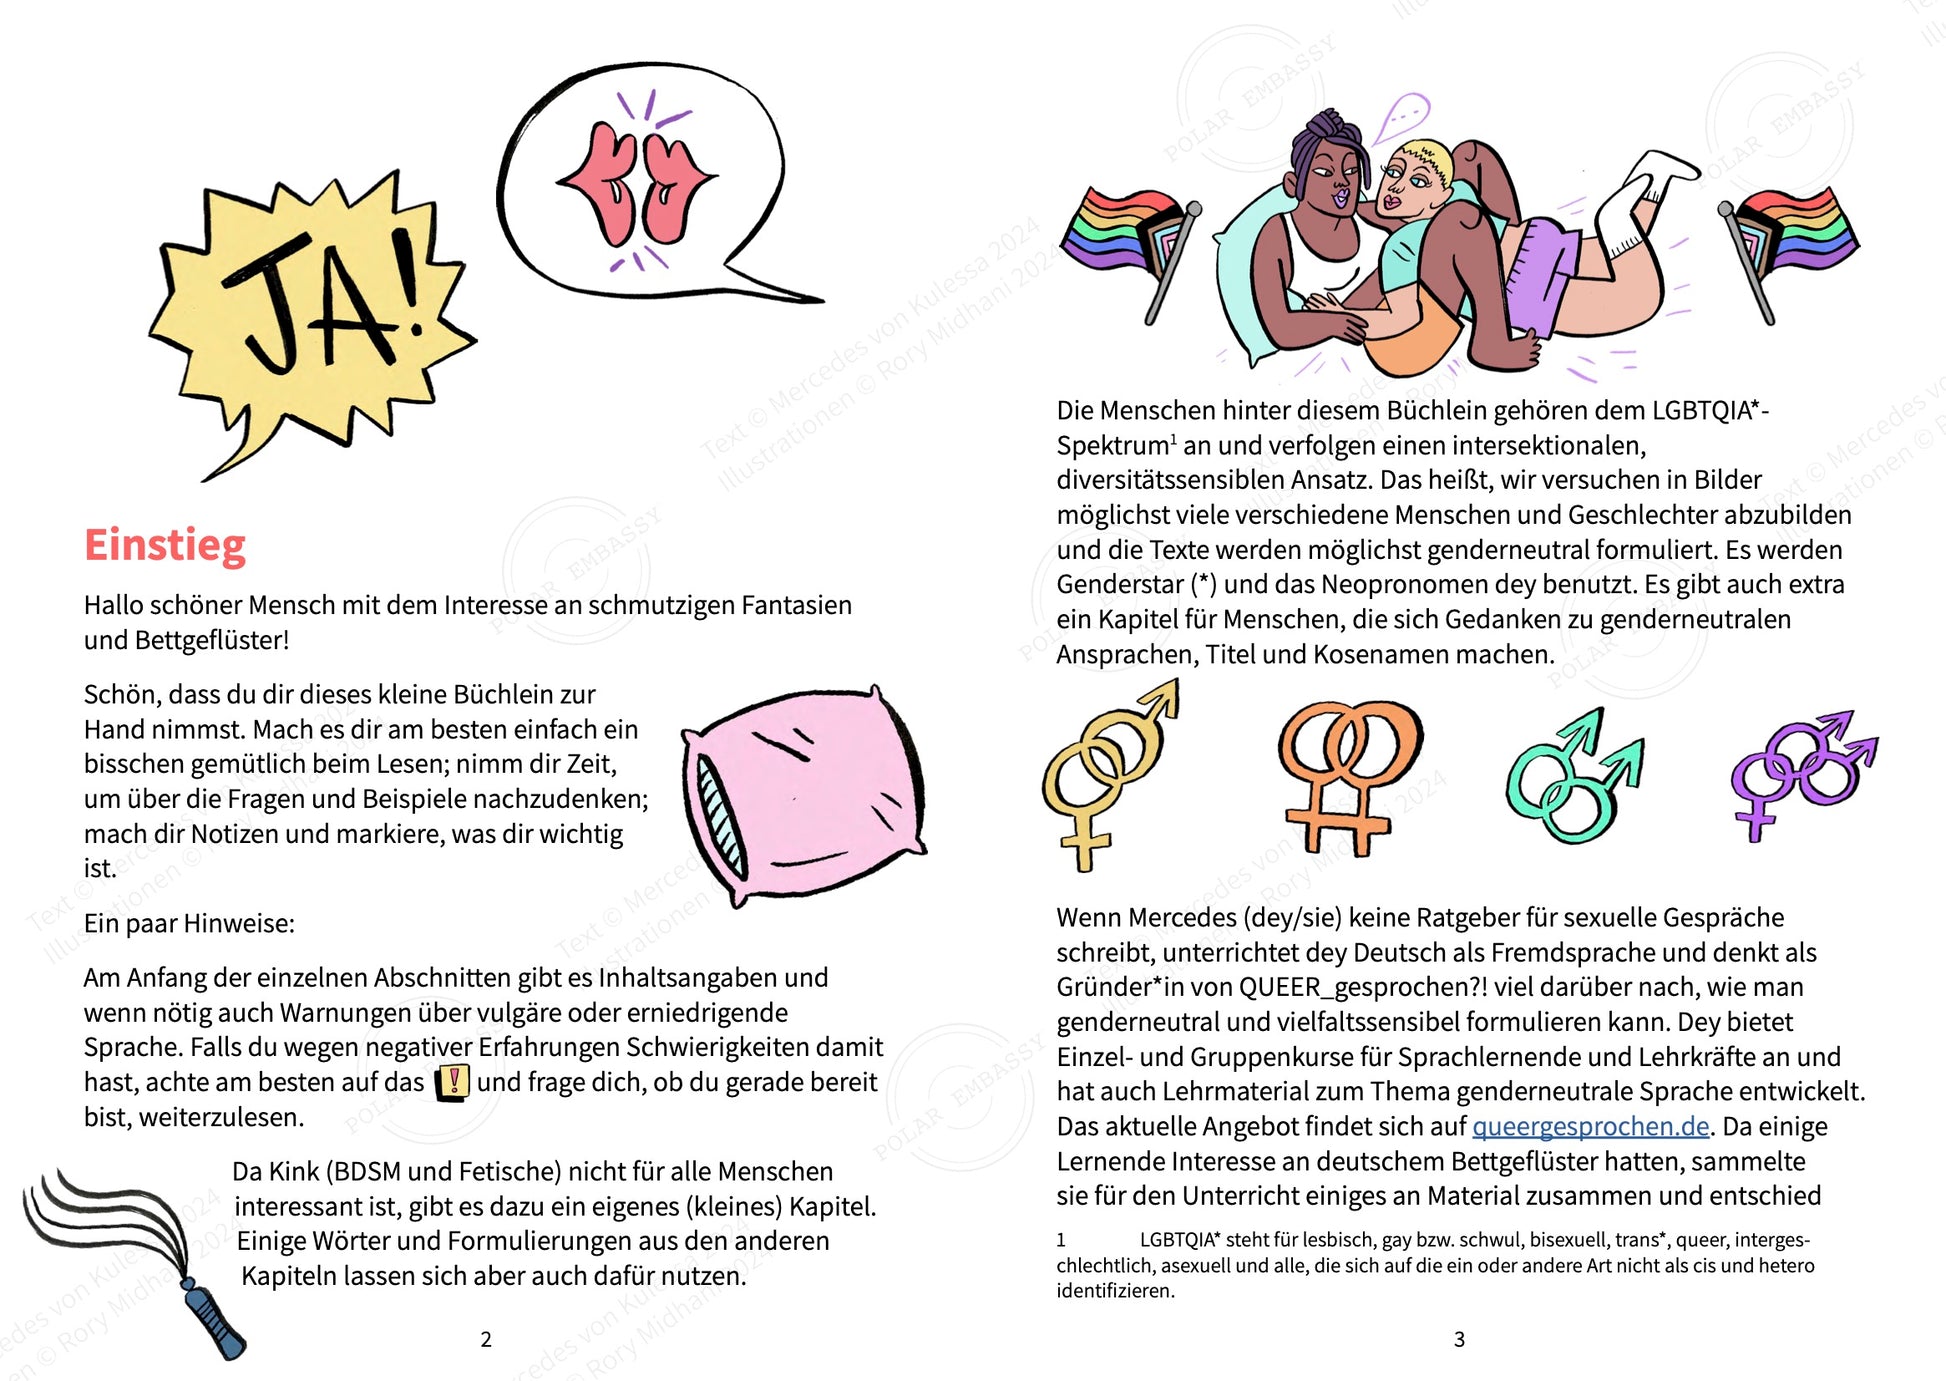 Beispiel für eine Doppelseite aus dem illustrierten Arbeitsbuch "Bettgeflüster". Es gibt ein Cartoon-Paar, das sich zwischen inklusiven Pride-Flaggen kuschelt, sowie Geschlechtersymbole, die weiblich/männlich, weiblich/weiblich, männlich/männlich und weiblich/männlich/männlich zeigen.